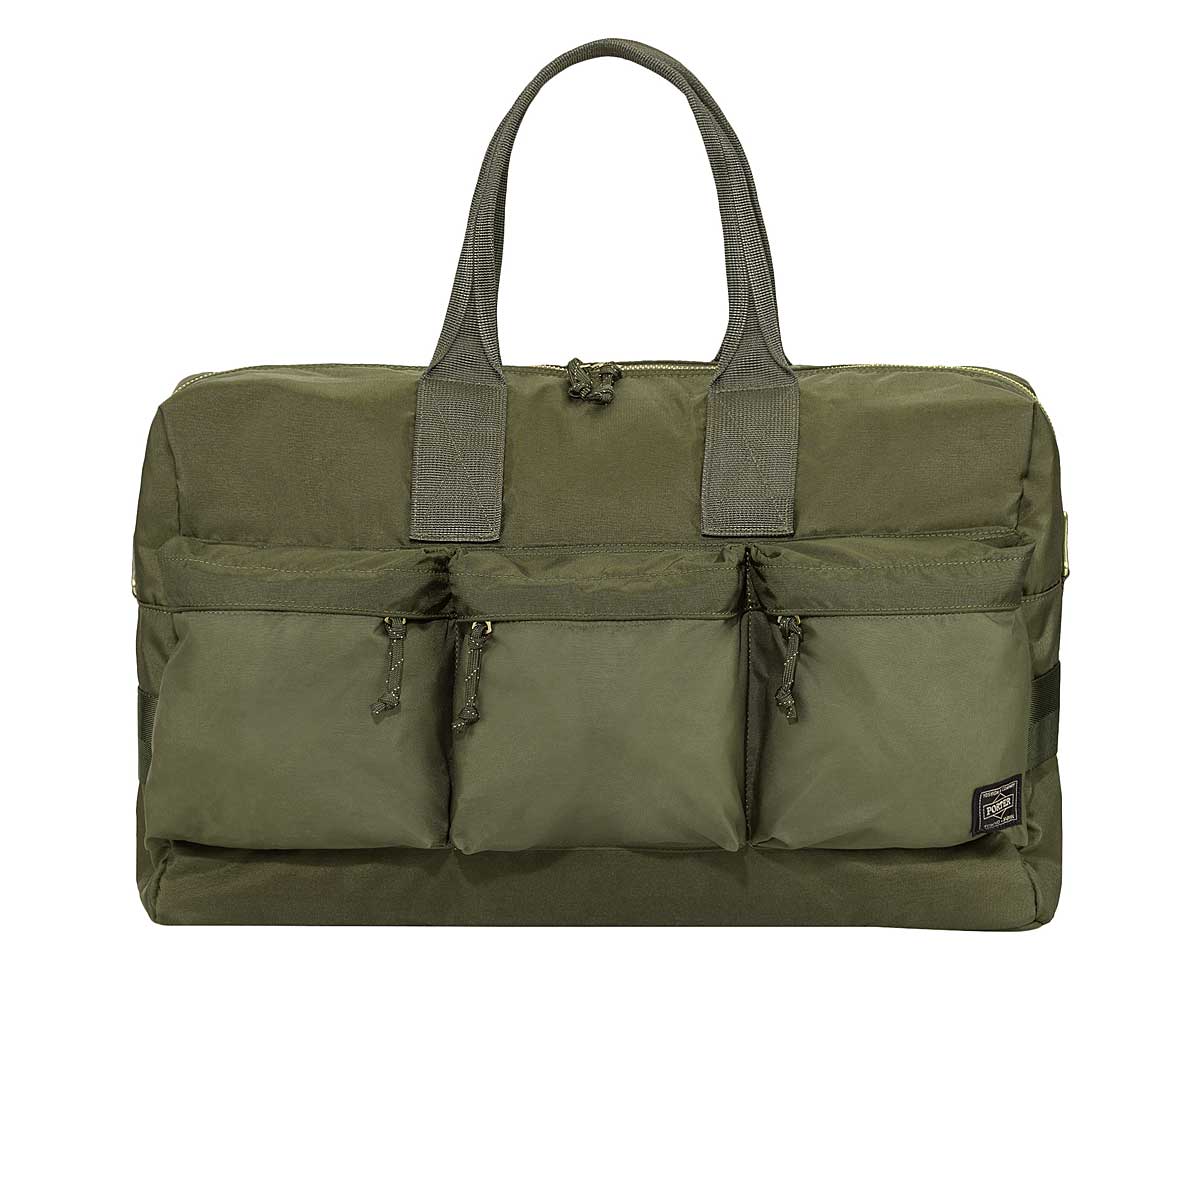 Köp FORCE 2Way Duffle Bag för EUR 189.90 på KICKZ.com!